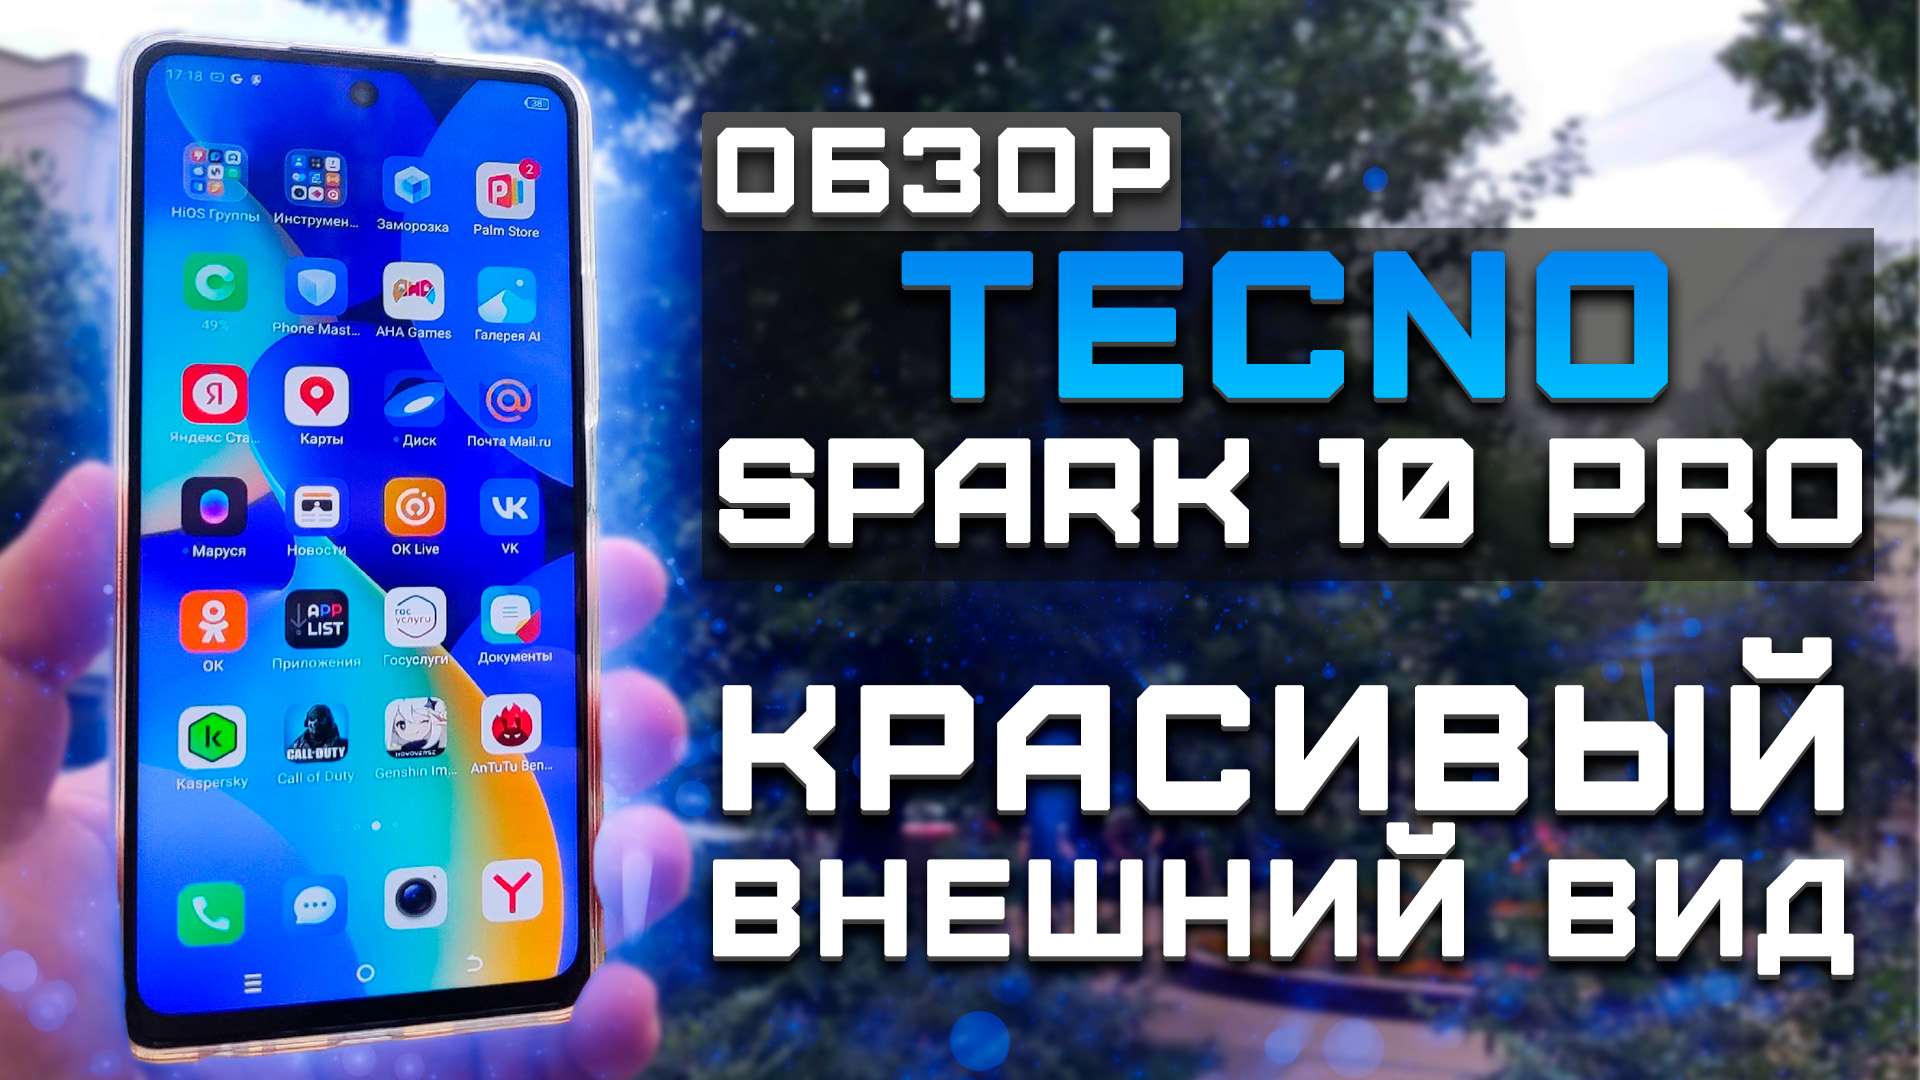 Обзор Tecno Spark 10 Pro | Тест телефона в 10 играх ► Красивый внешний вид! [Pleer.ru]